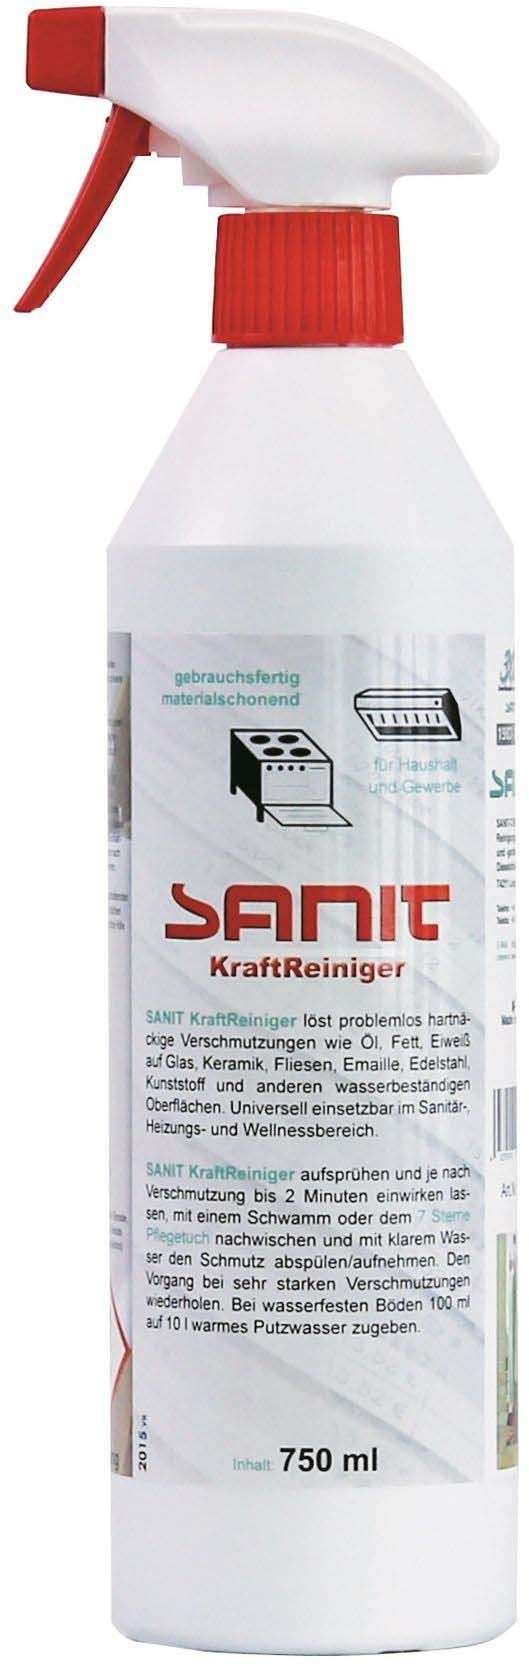 εικόνα του SANIT KraftReiniger power cleamer 750 ml 3009